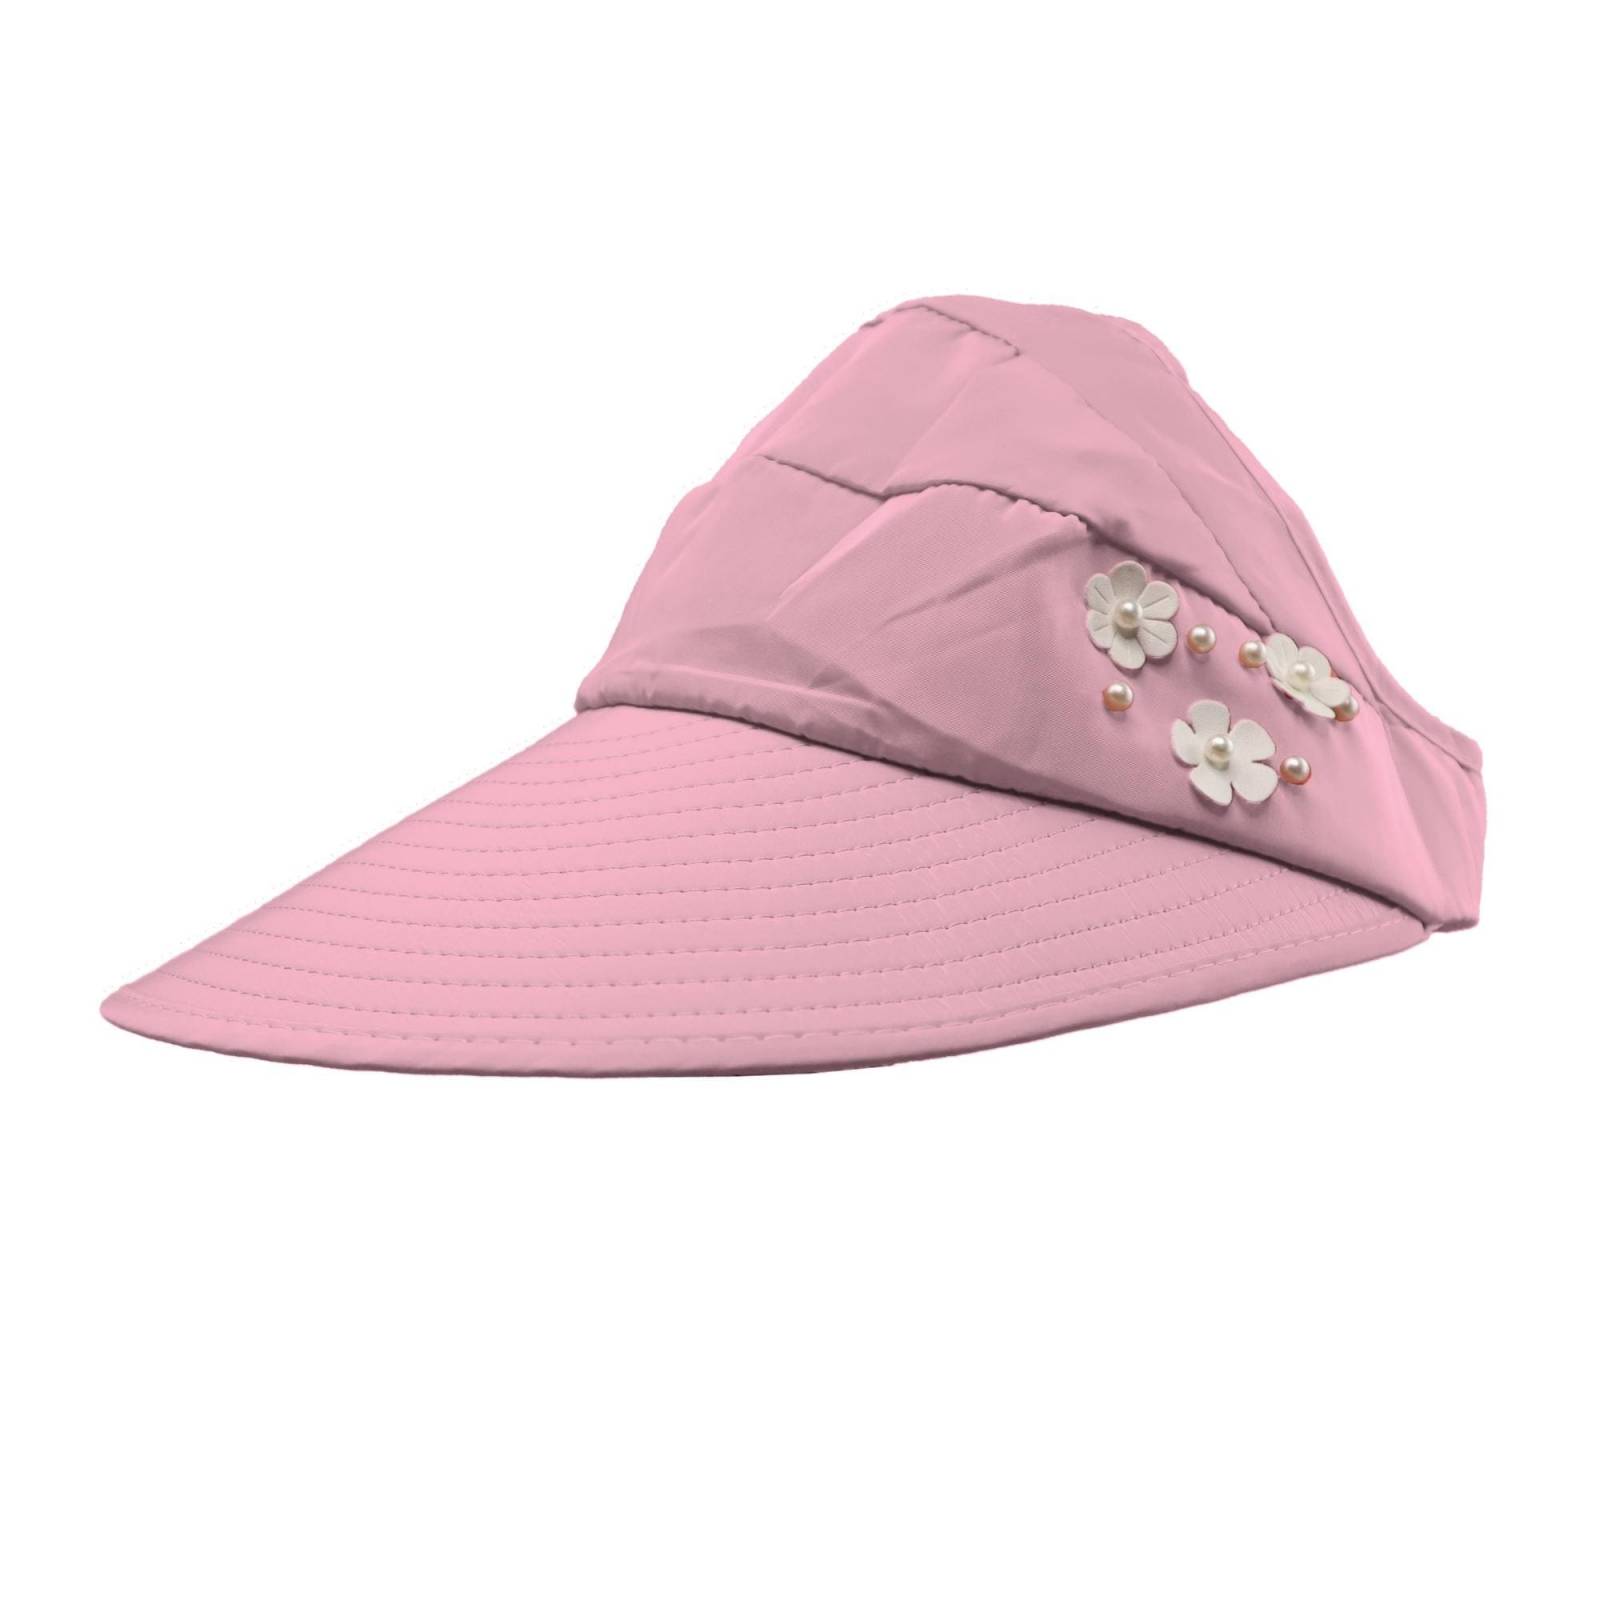 Sombrero Para Sol Dama Playa Primavera Verano Protección Uv (Rosa